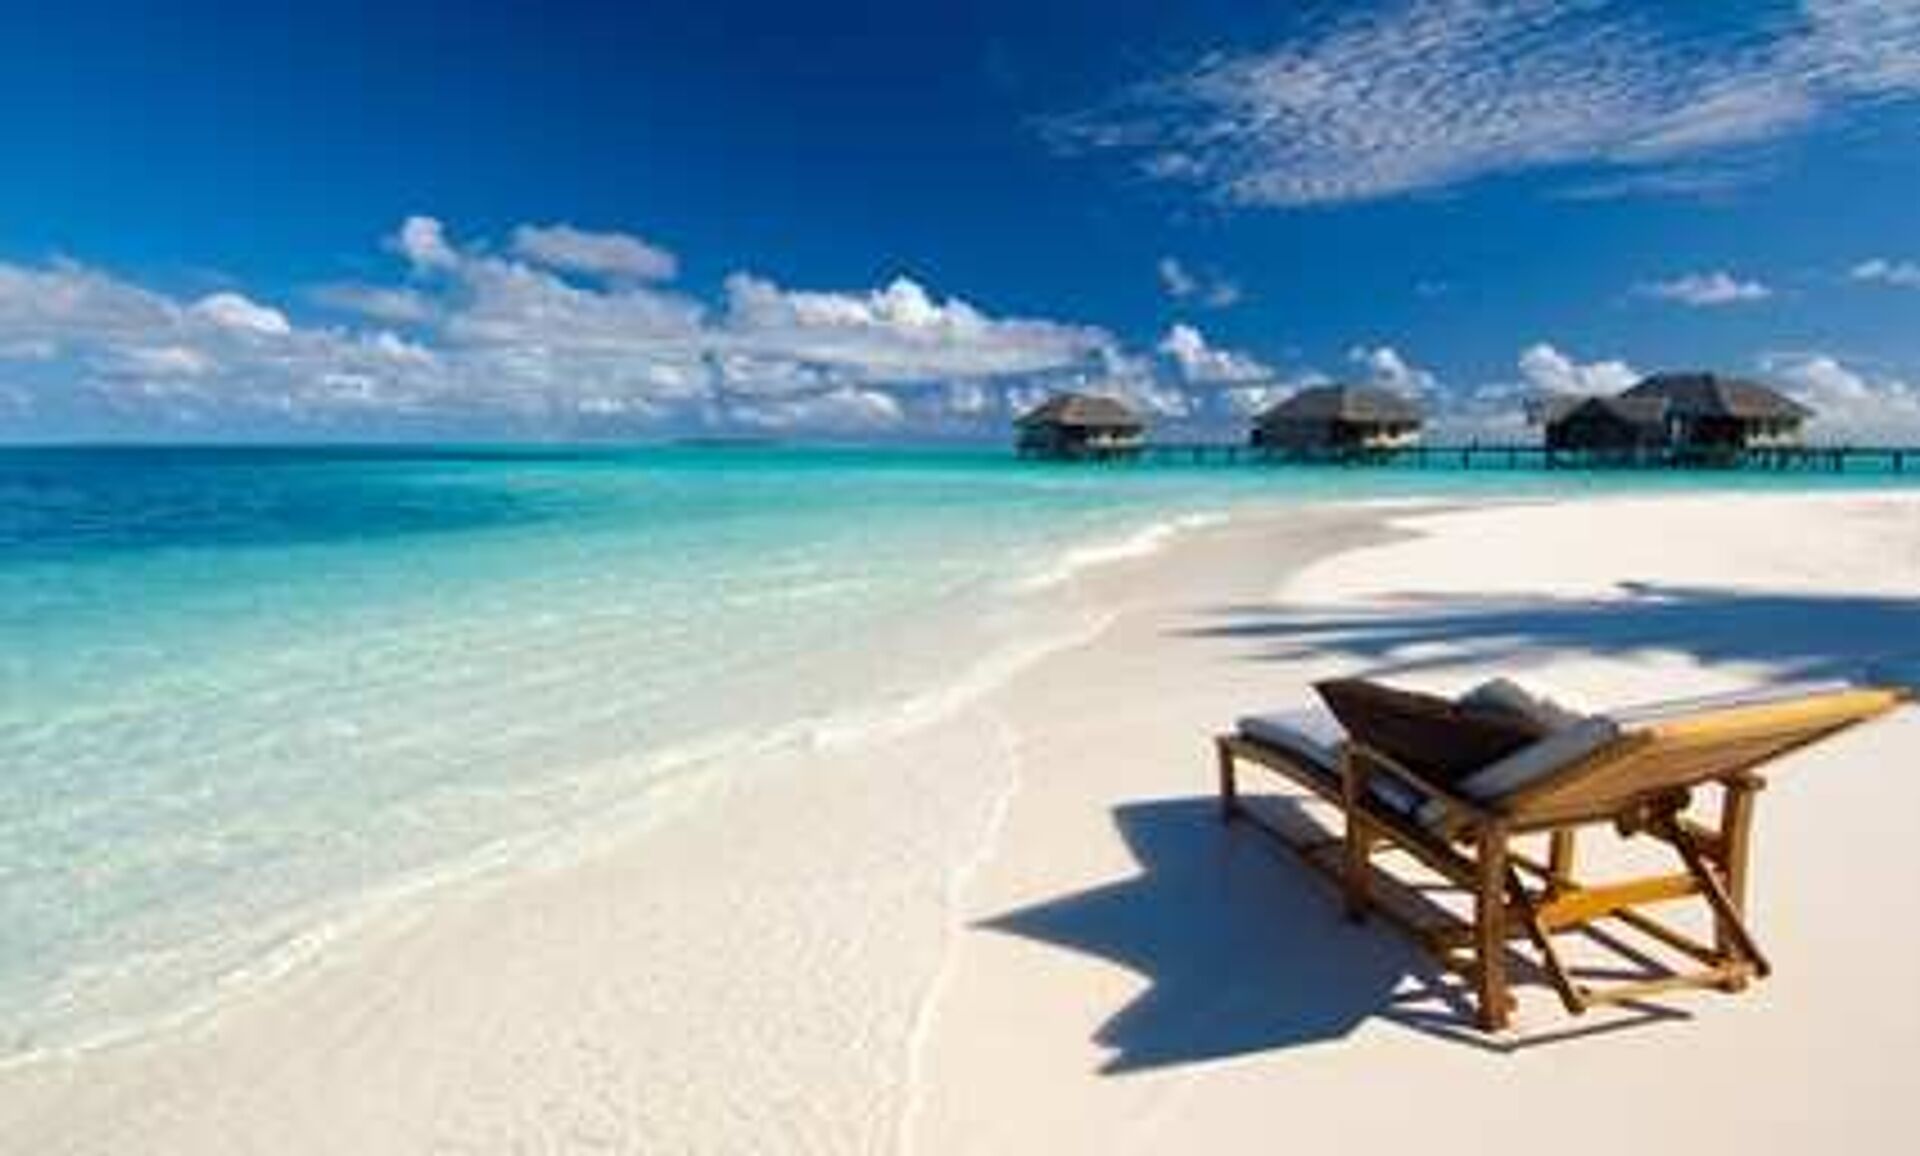 #Виллы и пляж спа-отеля Conrad Maldives - ПРАЙМ, 1920, 26.08.2022